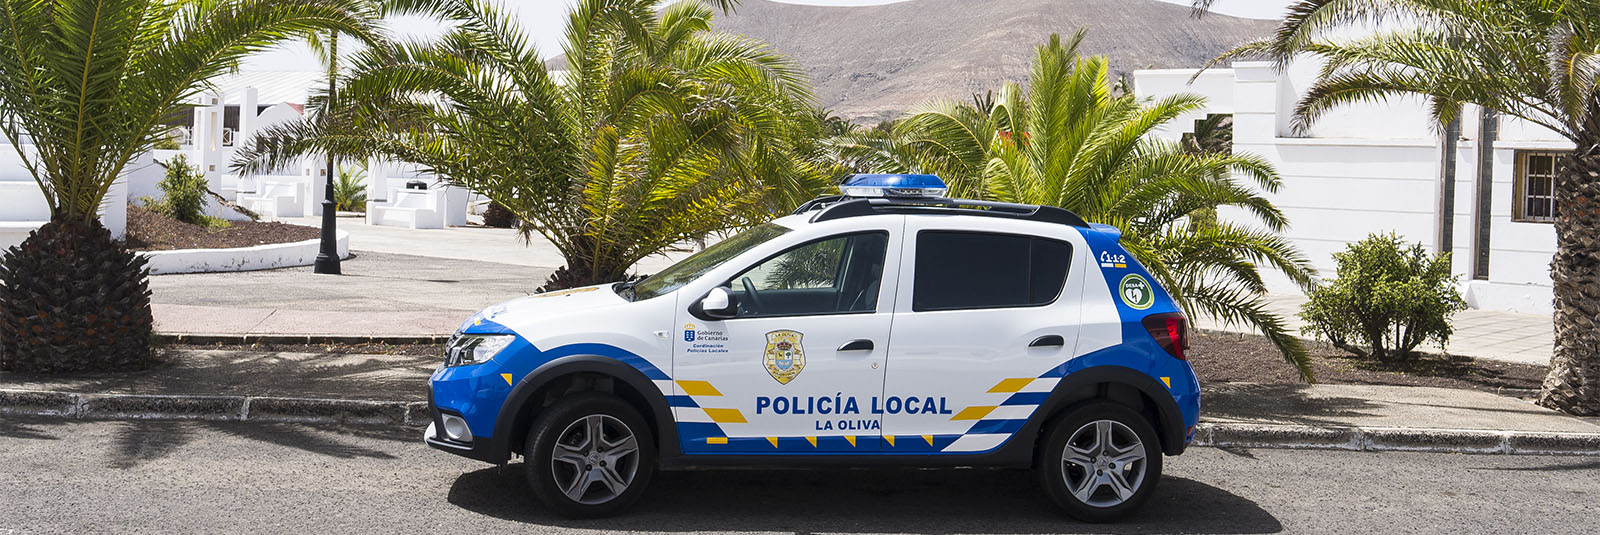 Sicherheit auf Fuerteventura: Policia Local.